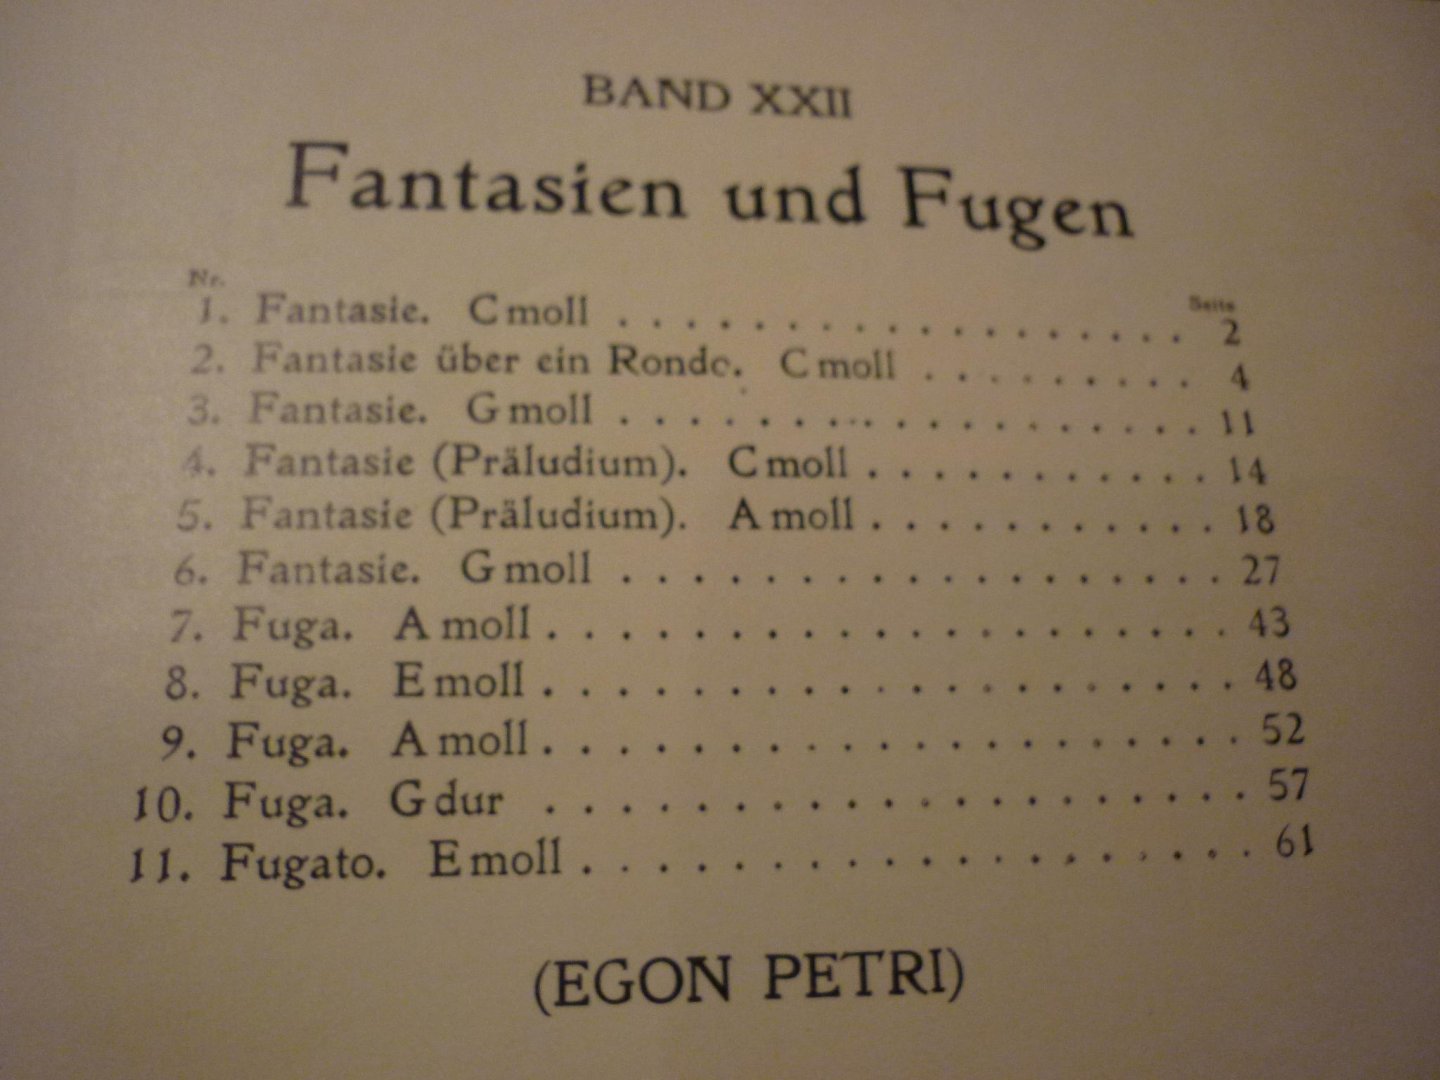 Bach; J. S. (1685-1750) - Sämtliche Klavierwerke; Bach-Busoni-Ausgabe Band 18; Band 10 en Band12